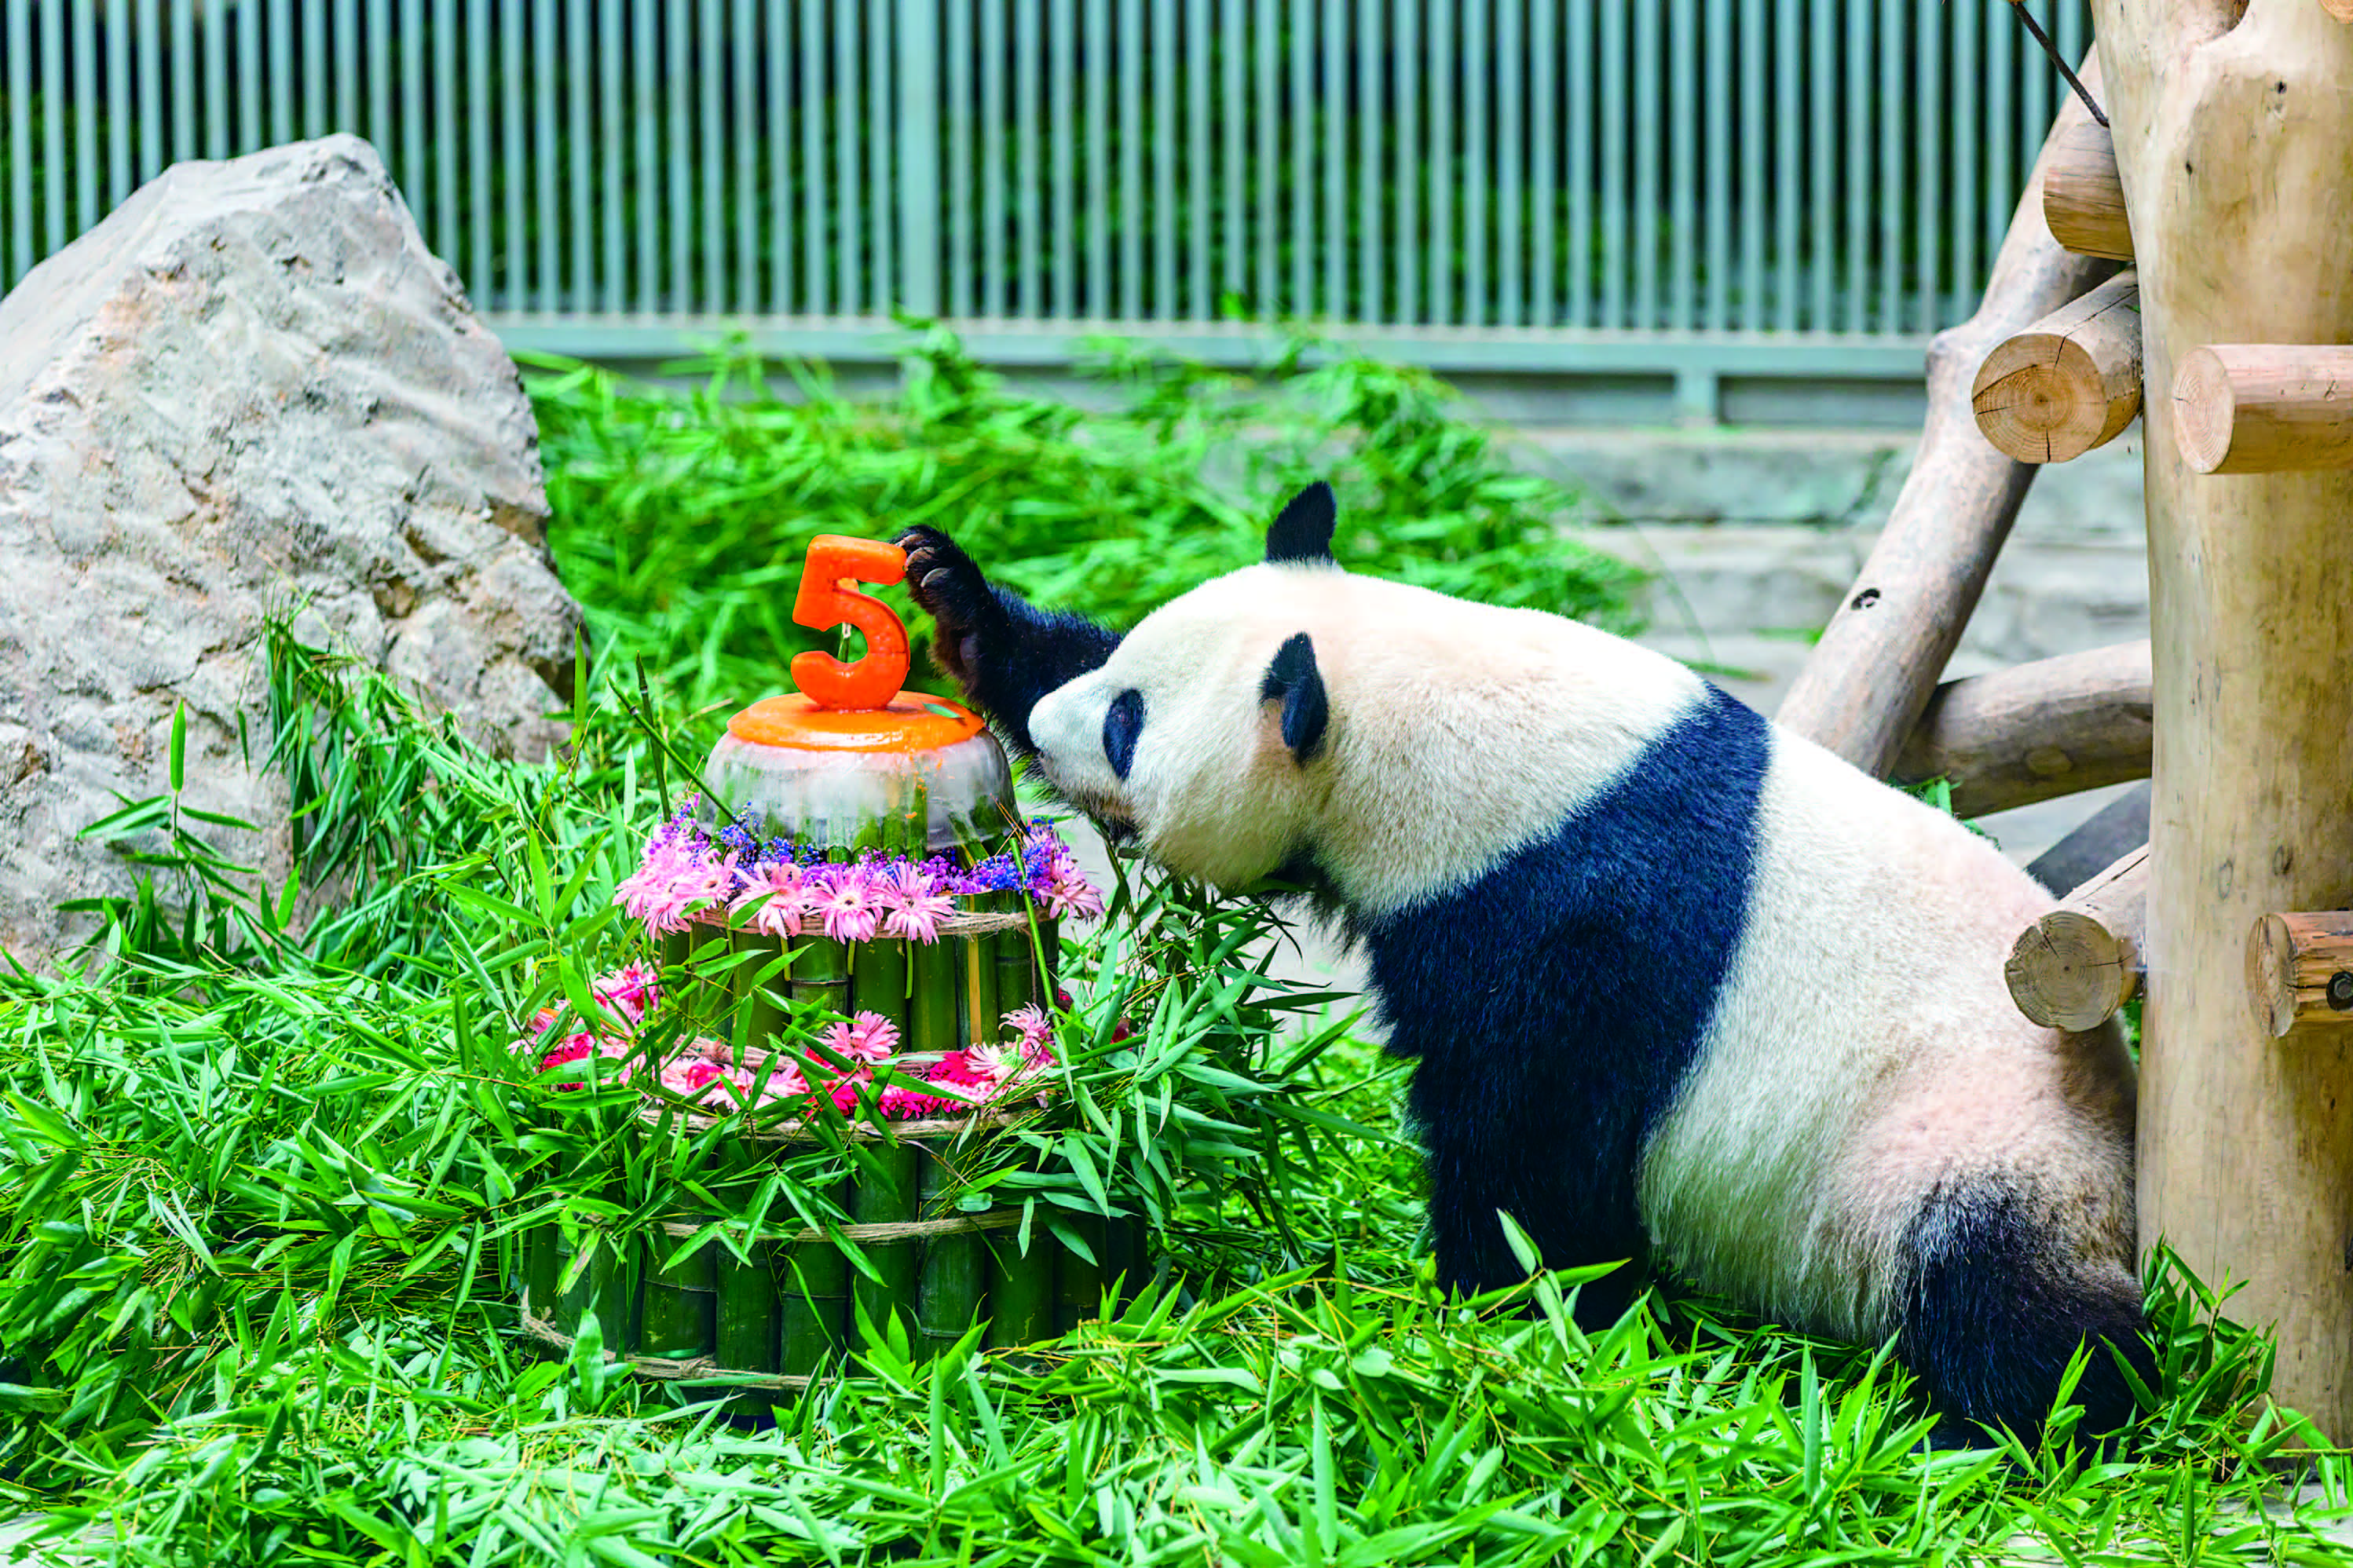 为了筹备此次生日,景区工作人员进行了精心布置,不仅有童趣满满的熊猫